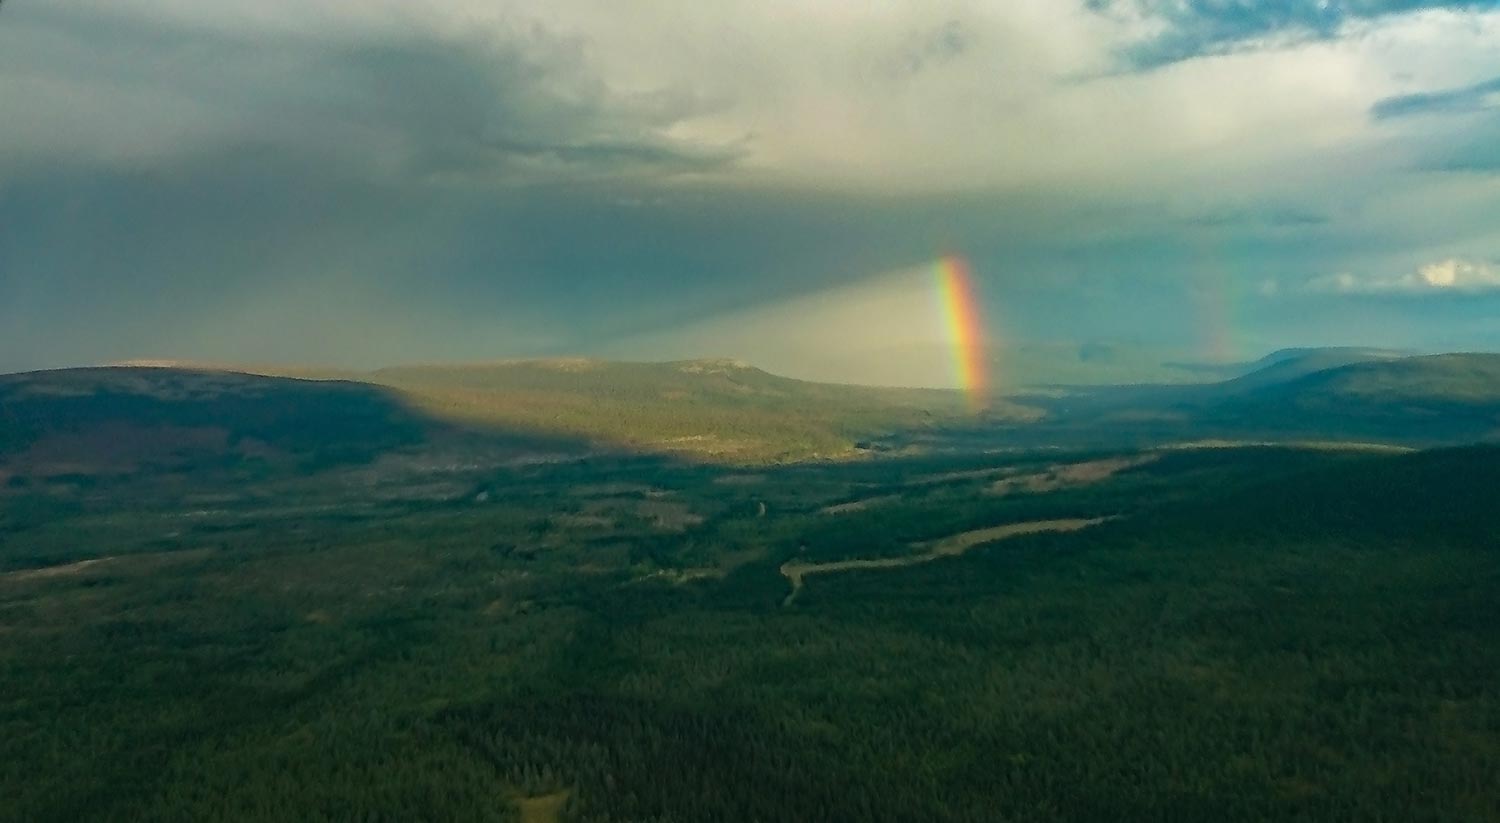 Innflyging til Ljørdalen, regnbue over Faksefjell.